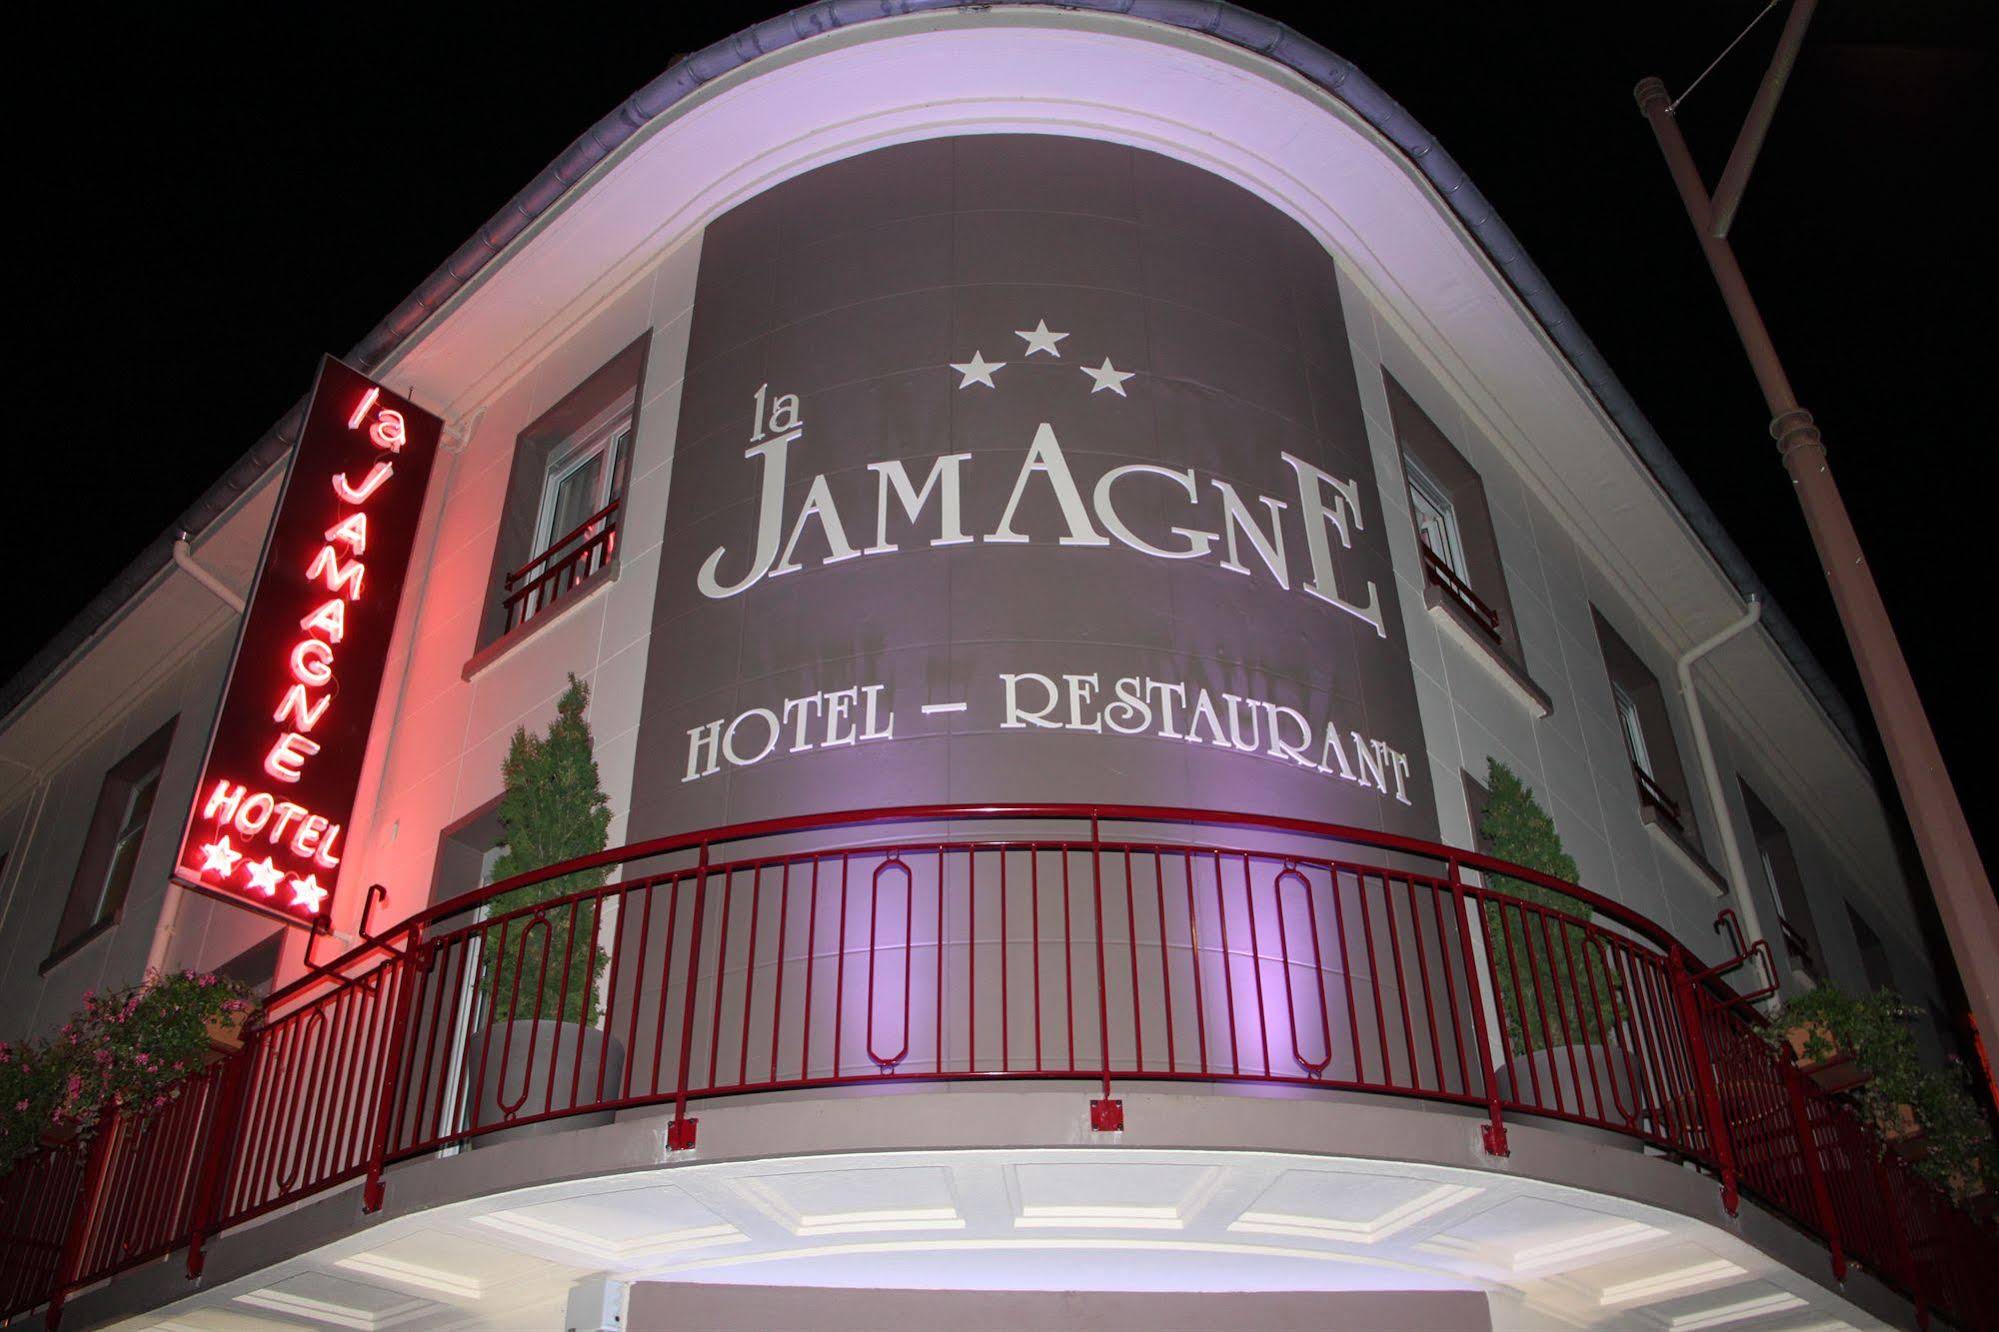 Hôtel La Jamagne